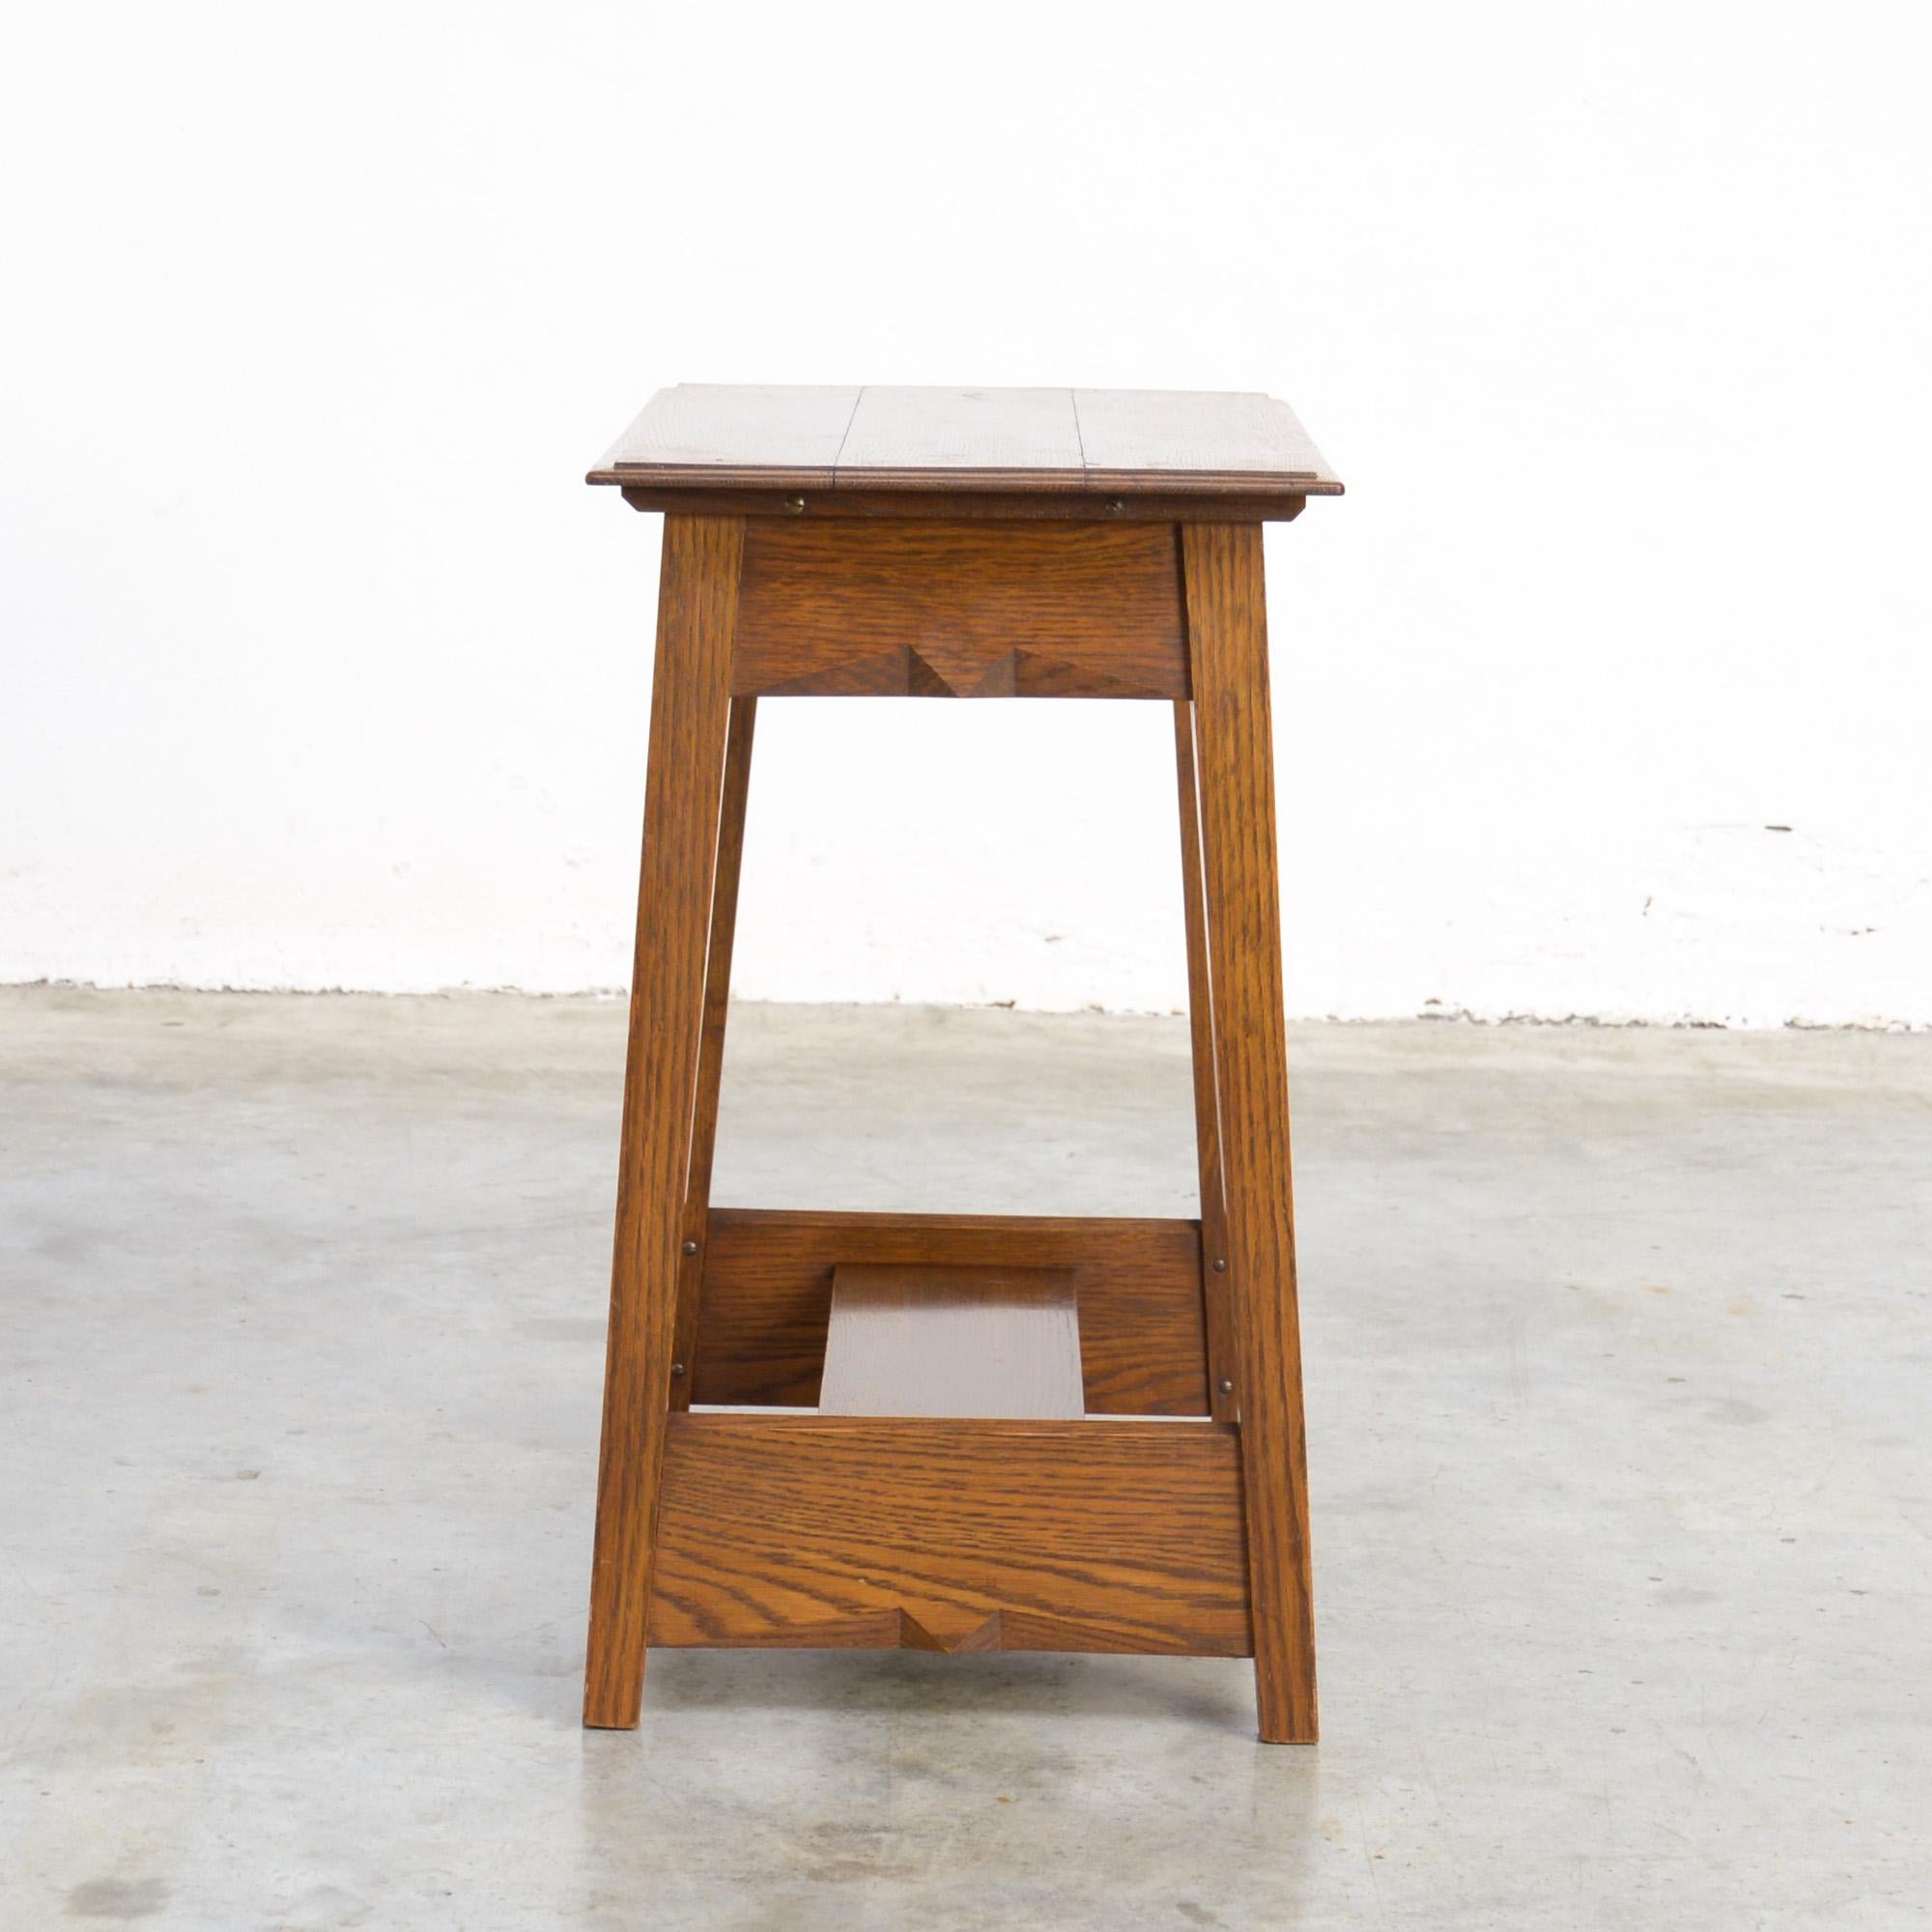 Cette table d'appoint en bois est signée G.A.V.D. Groenekan.
C'est une table pure avec quelques détails sophistiqués.
Cette table solide et artisanale a été fabriquée par Gerard A. Van de Groenekan, qui a également travaillé pour Gerrit Rietveld.